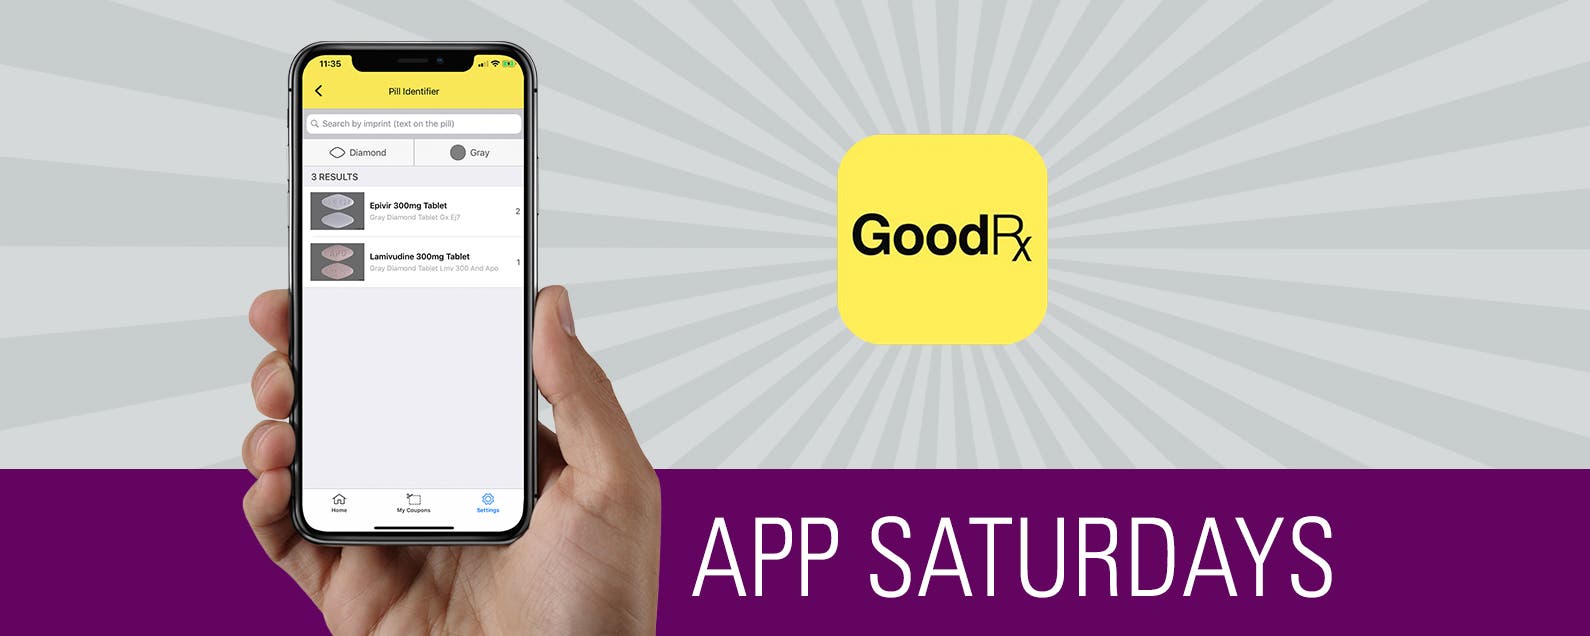 App Saturday: GoodRx | iPhoneLife.com